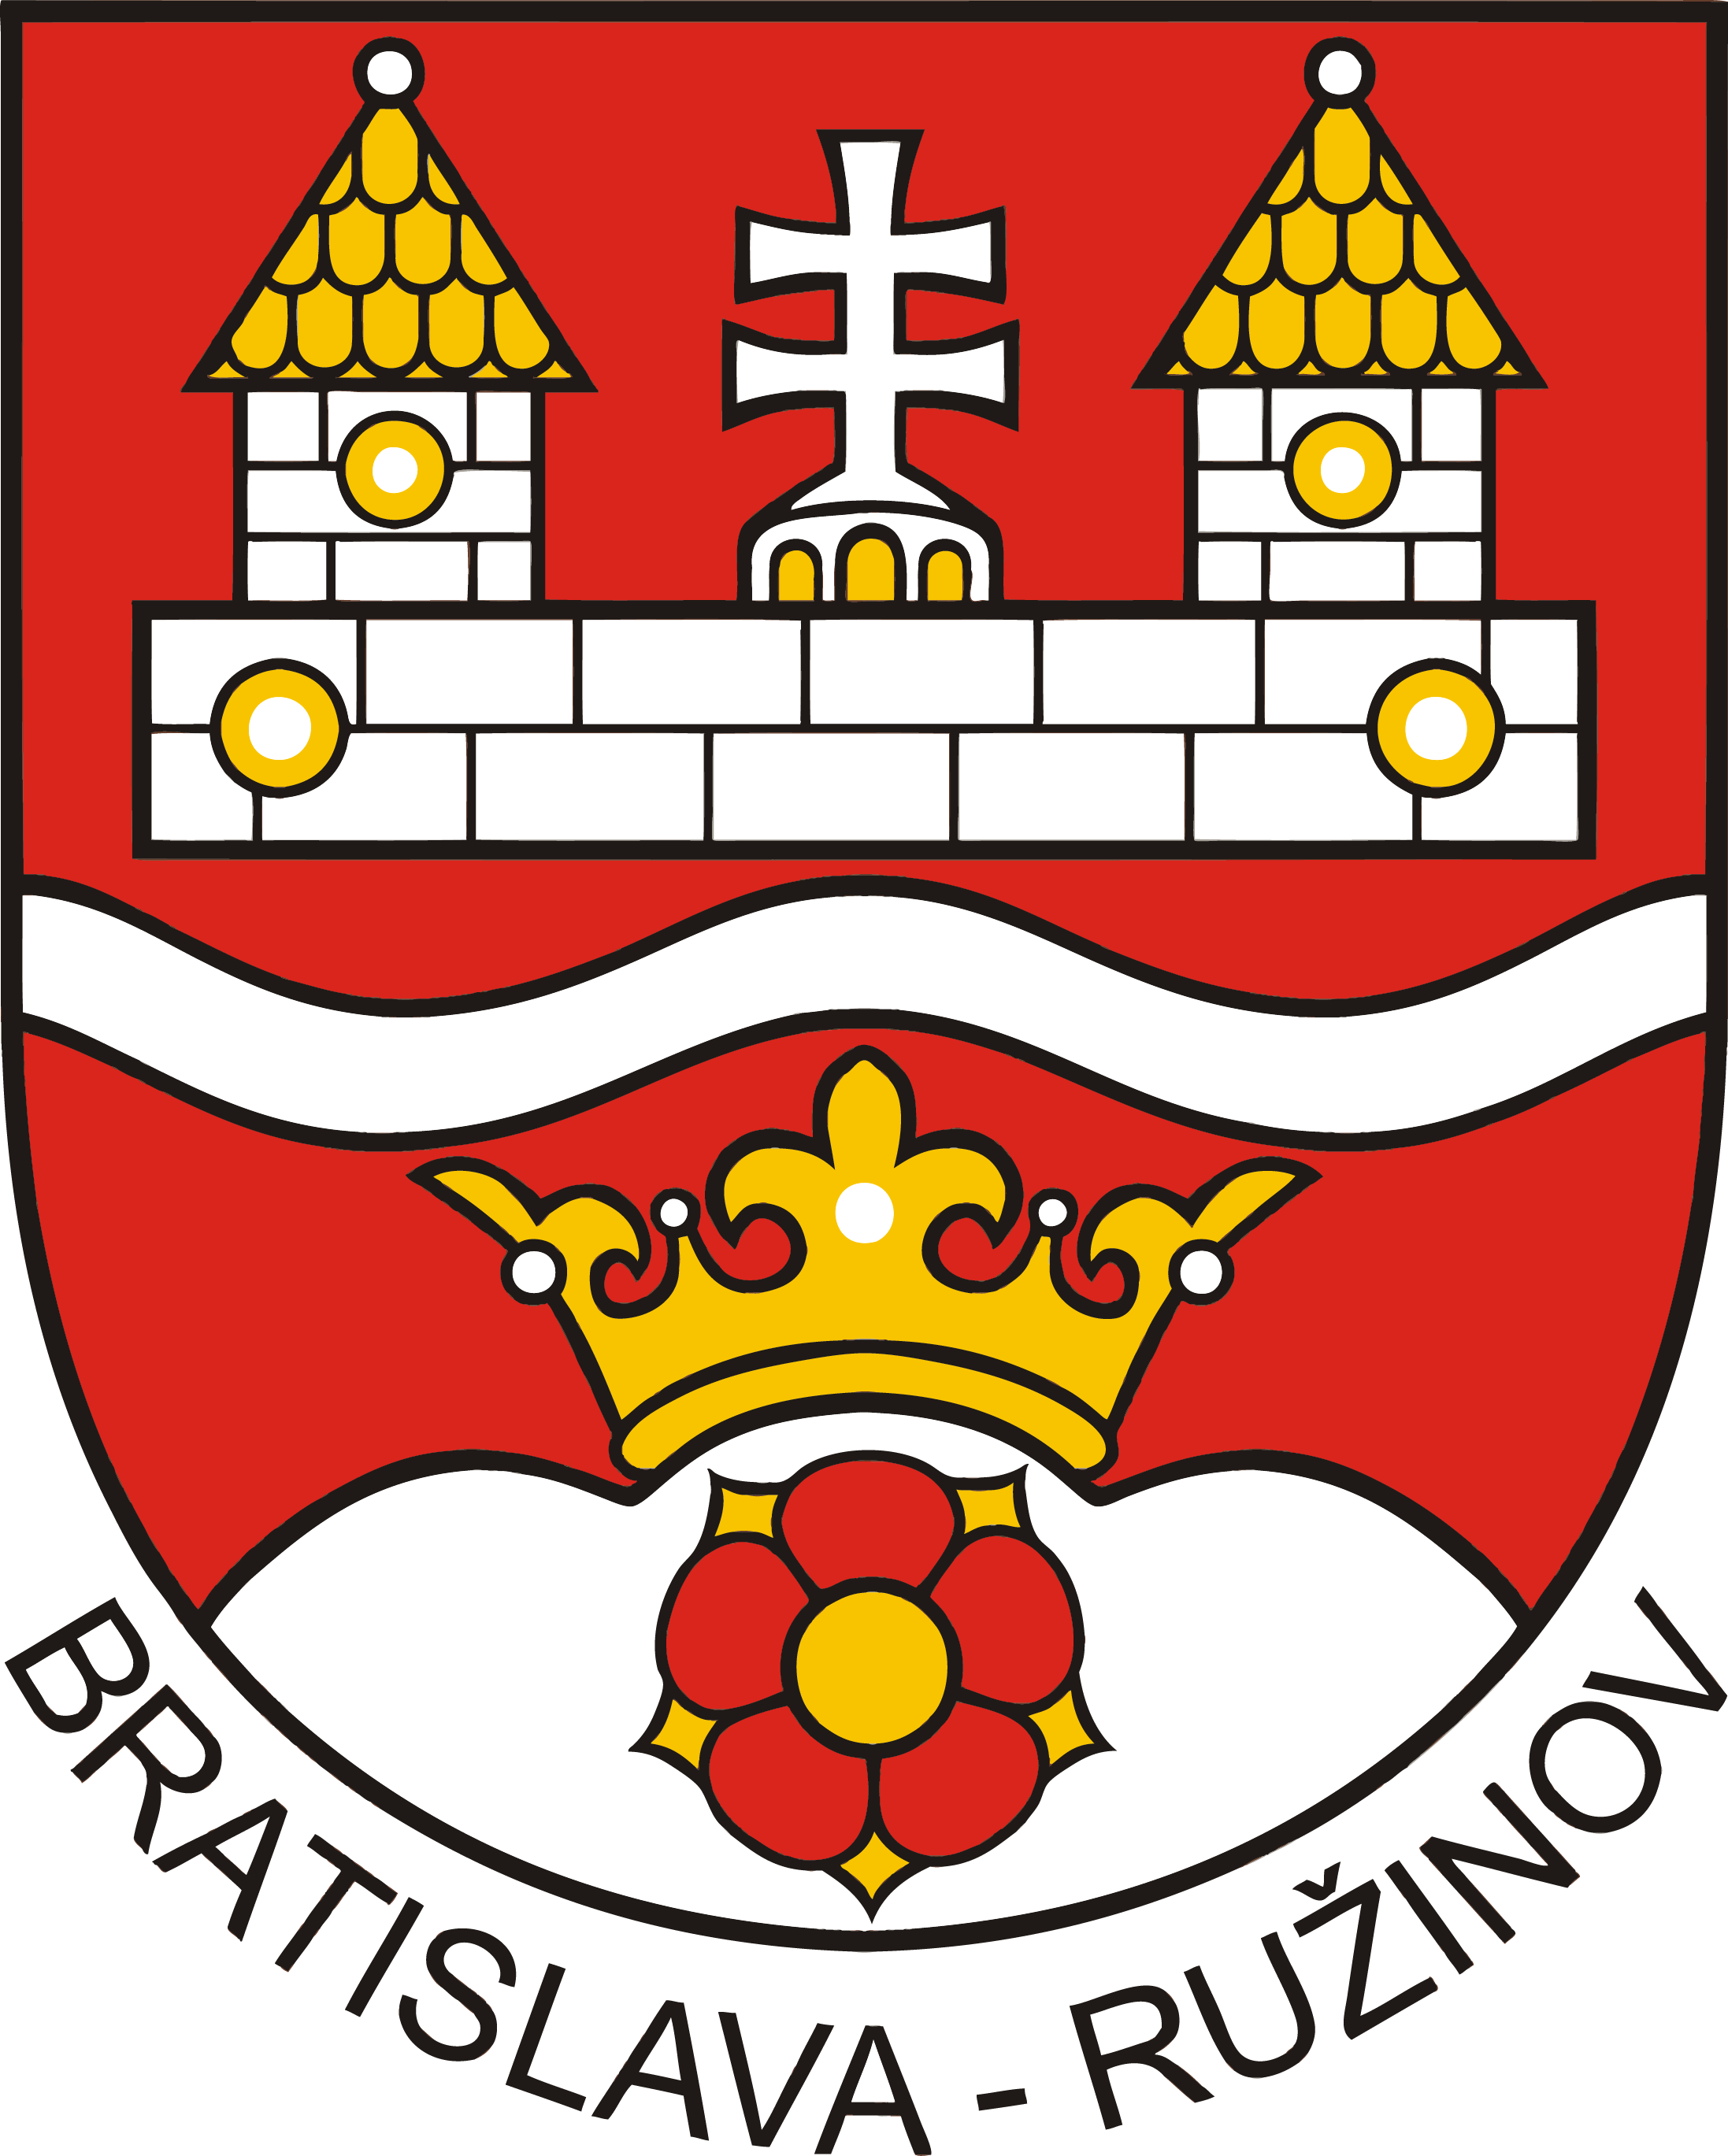 Miestny úrad Bratislava - Ružinov